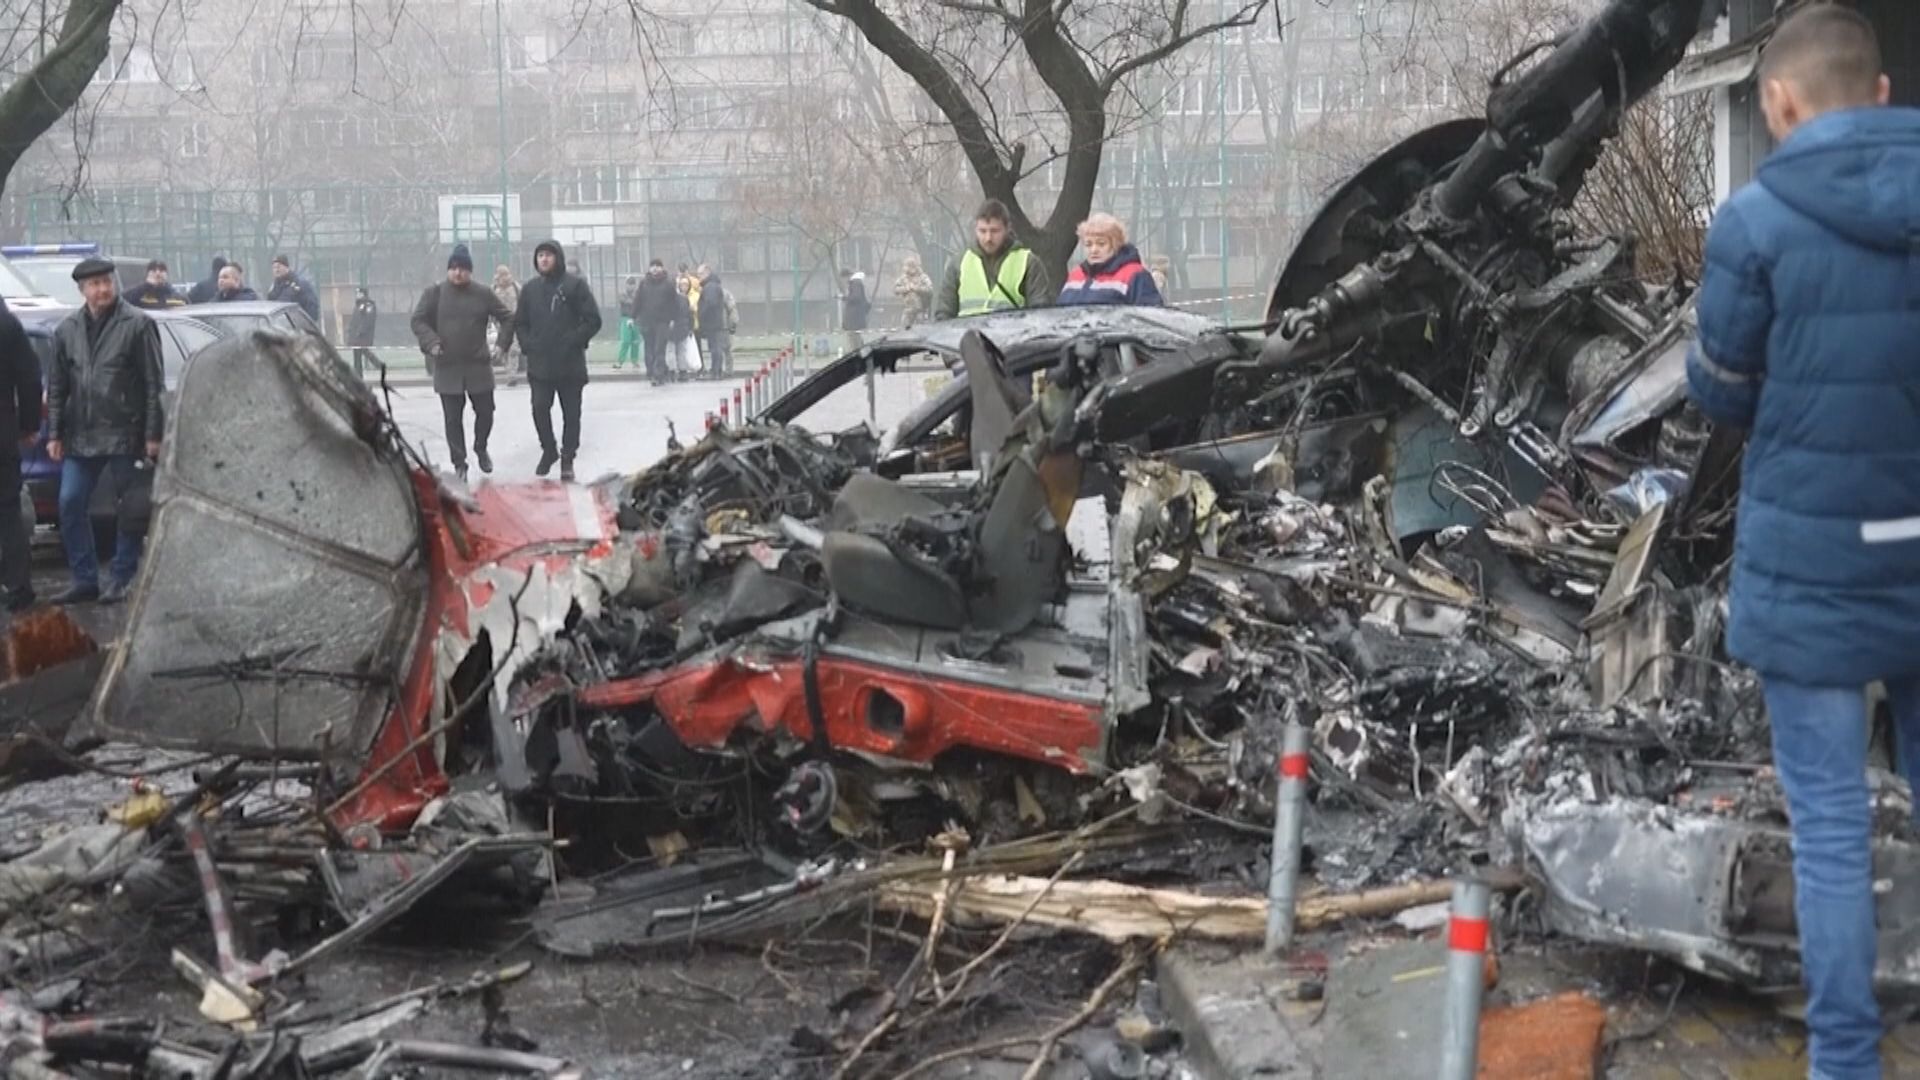 烏克蘭內政部長在直升機墜毀事故中死亡